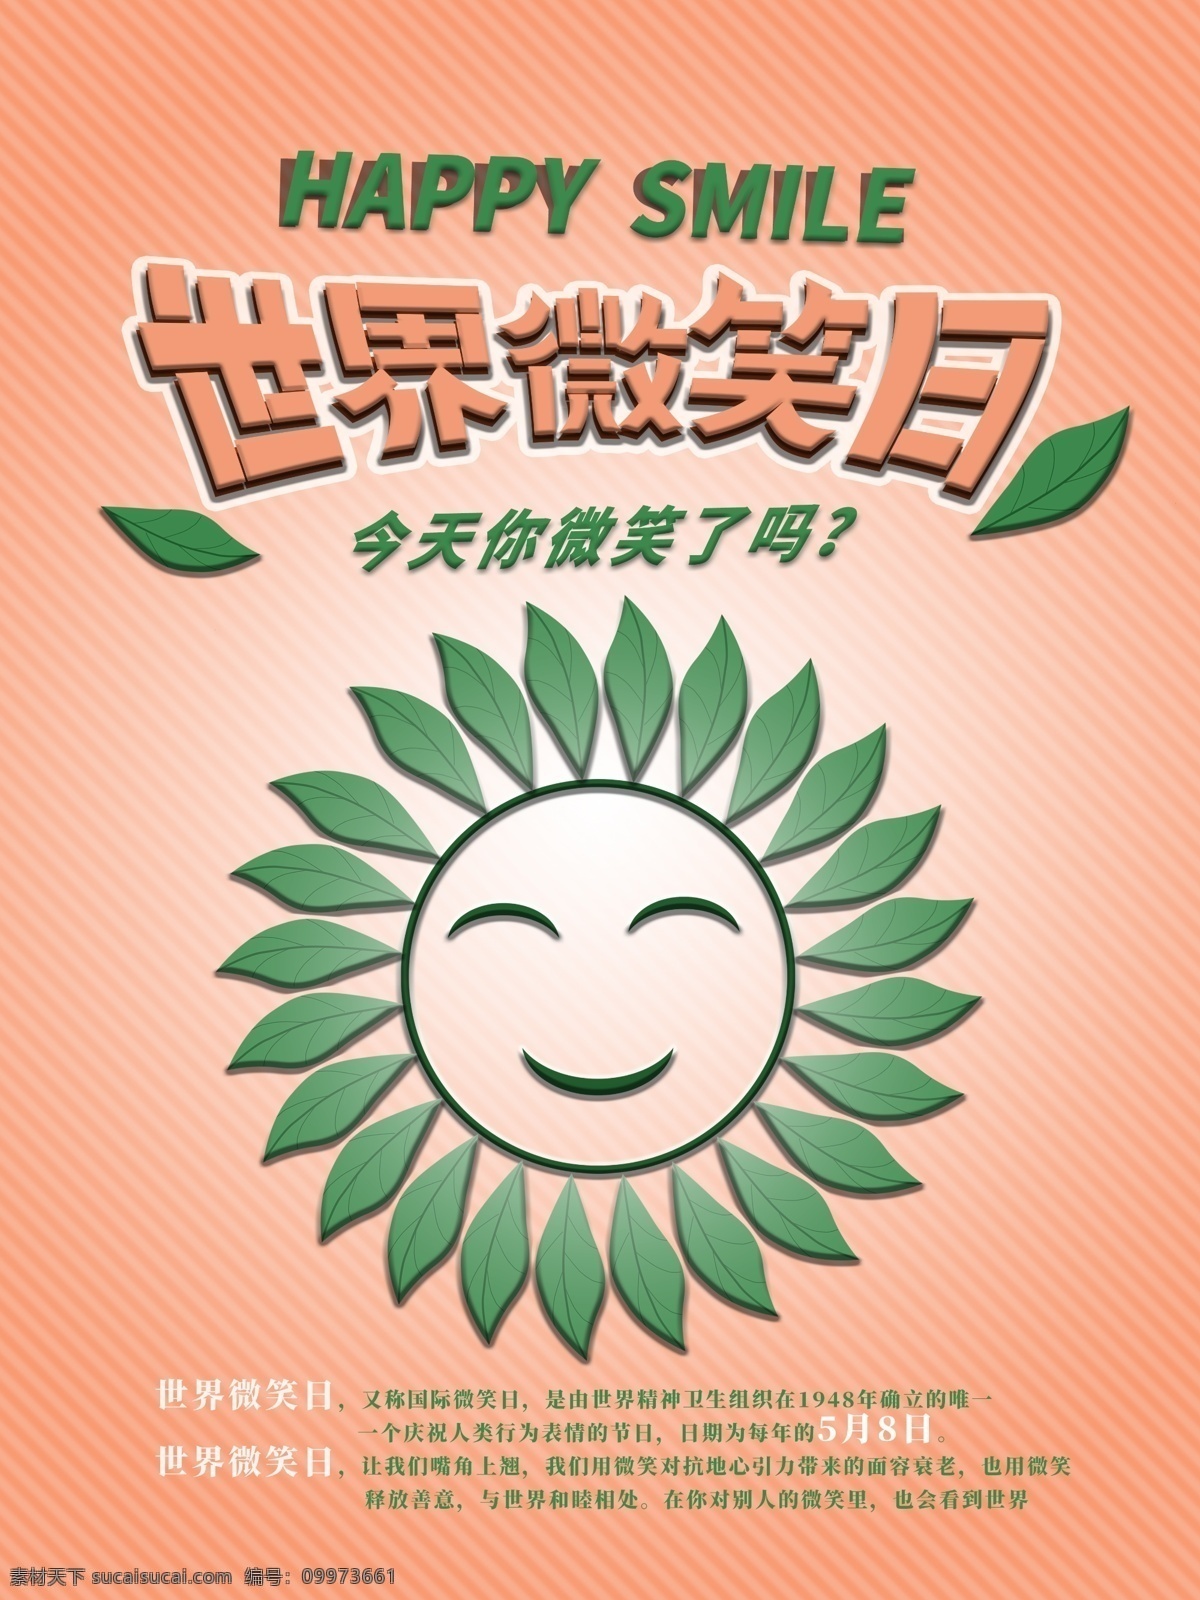 原创 绿色 粉色 简约 大气 世界 微笑 日 海报 公益 世界微笑日 绿叶 白色 节日海报 5月8日 五月八日 笑脸